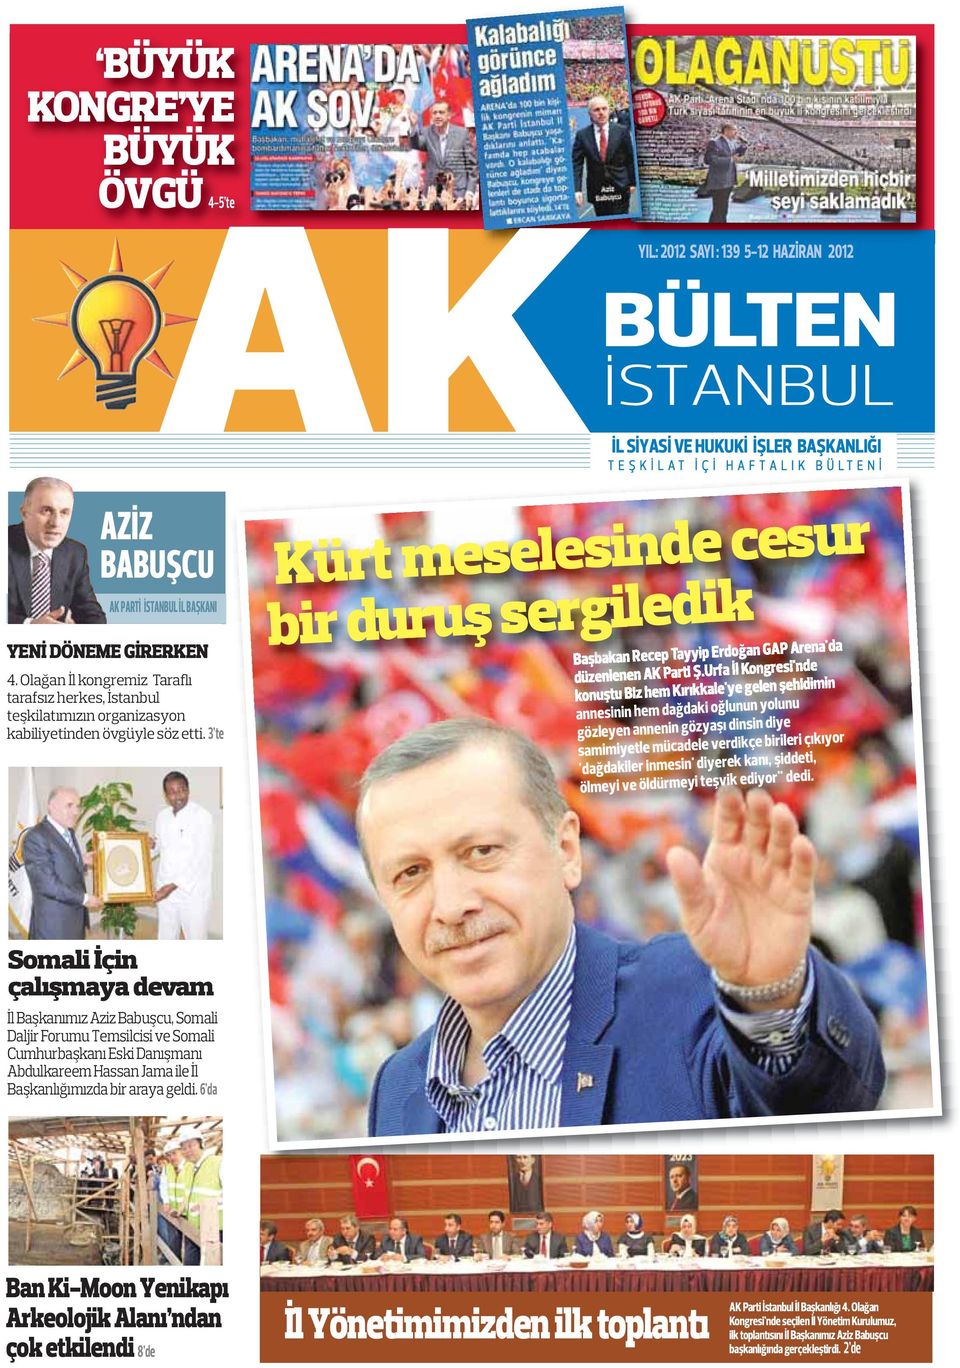 3 te Kürt meselesinde cesur bir duruş sergiledik Başbakan Recep Tayyip Erdoğan GAP Arena'da düzenlenen AK Parti Ş.